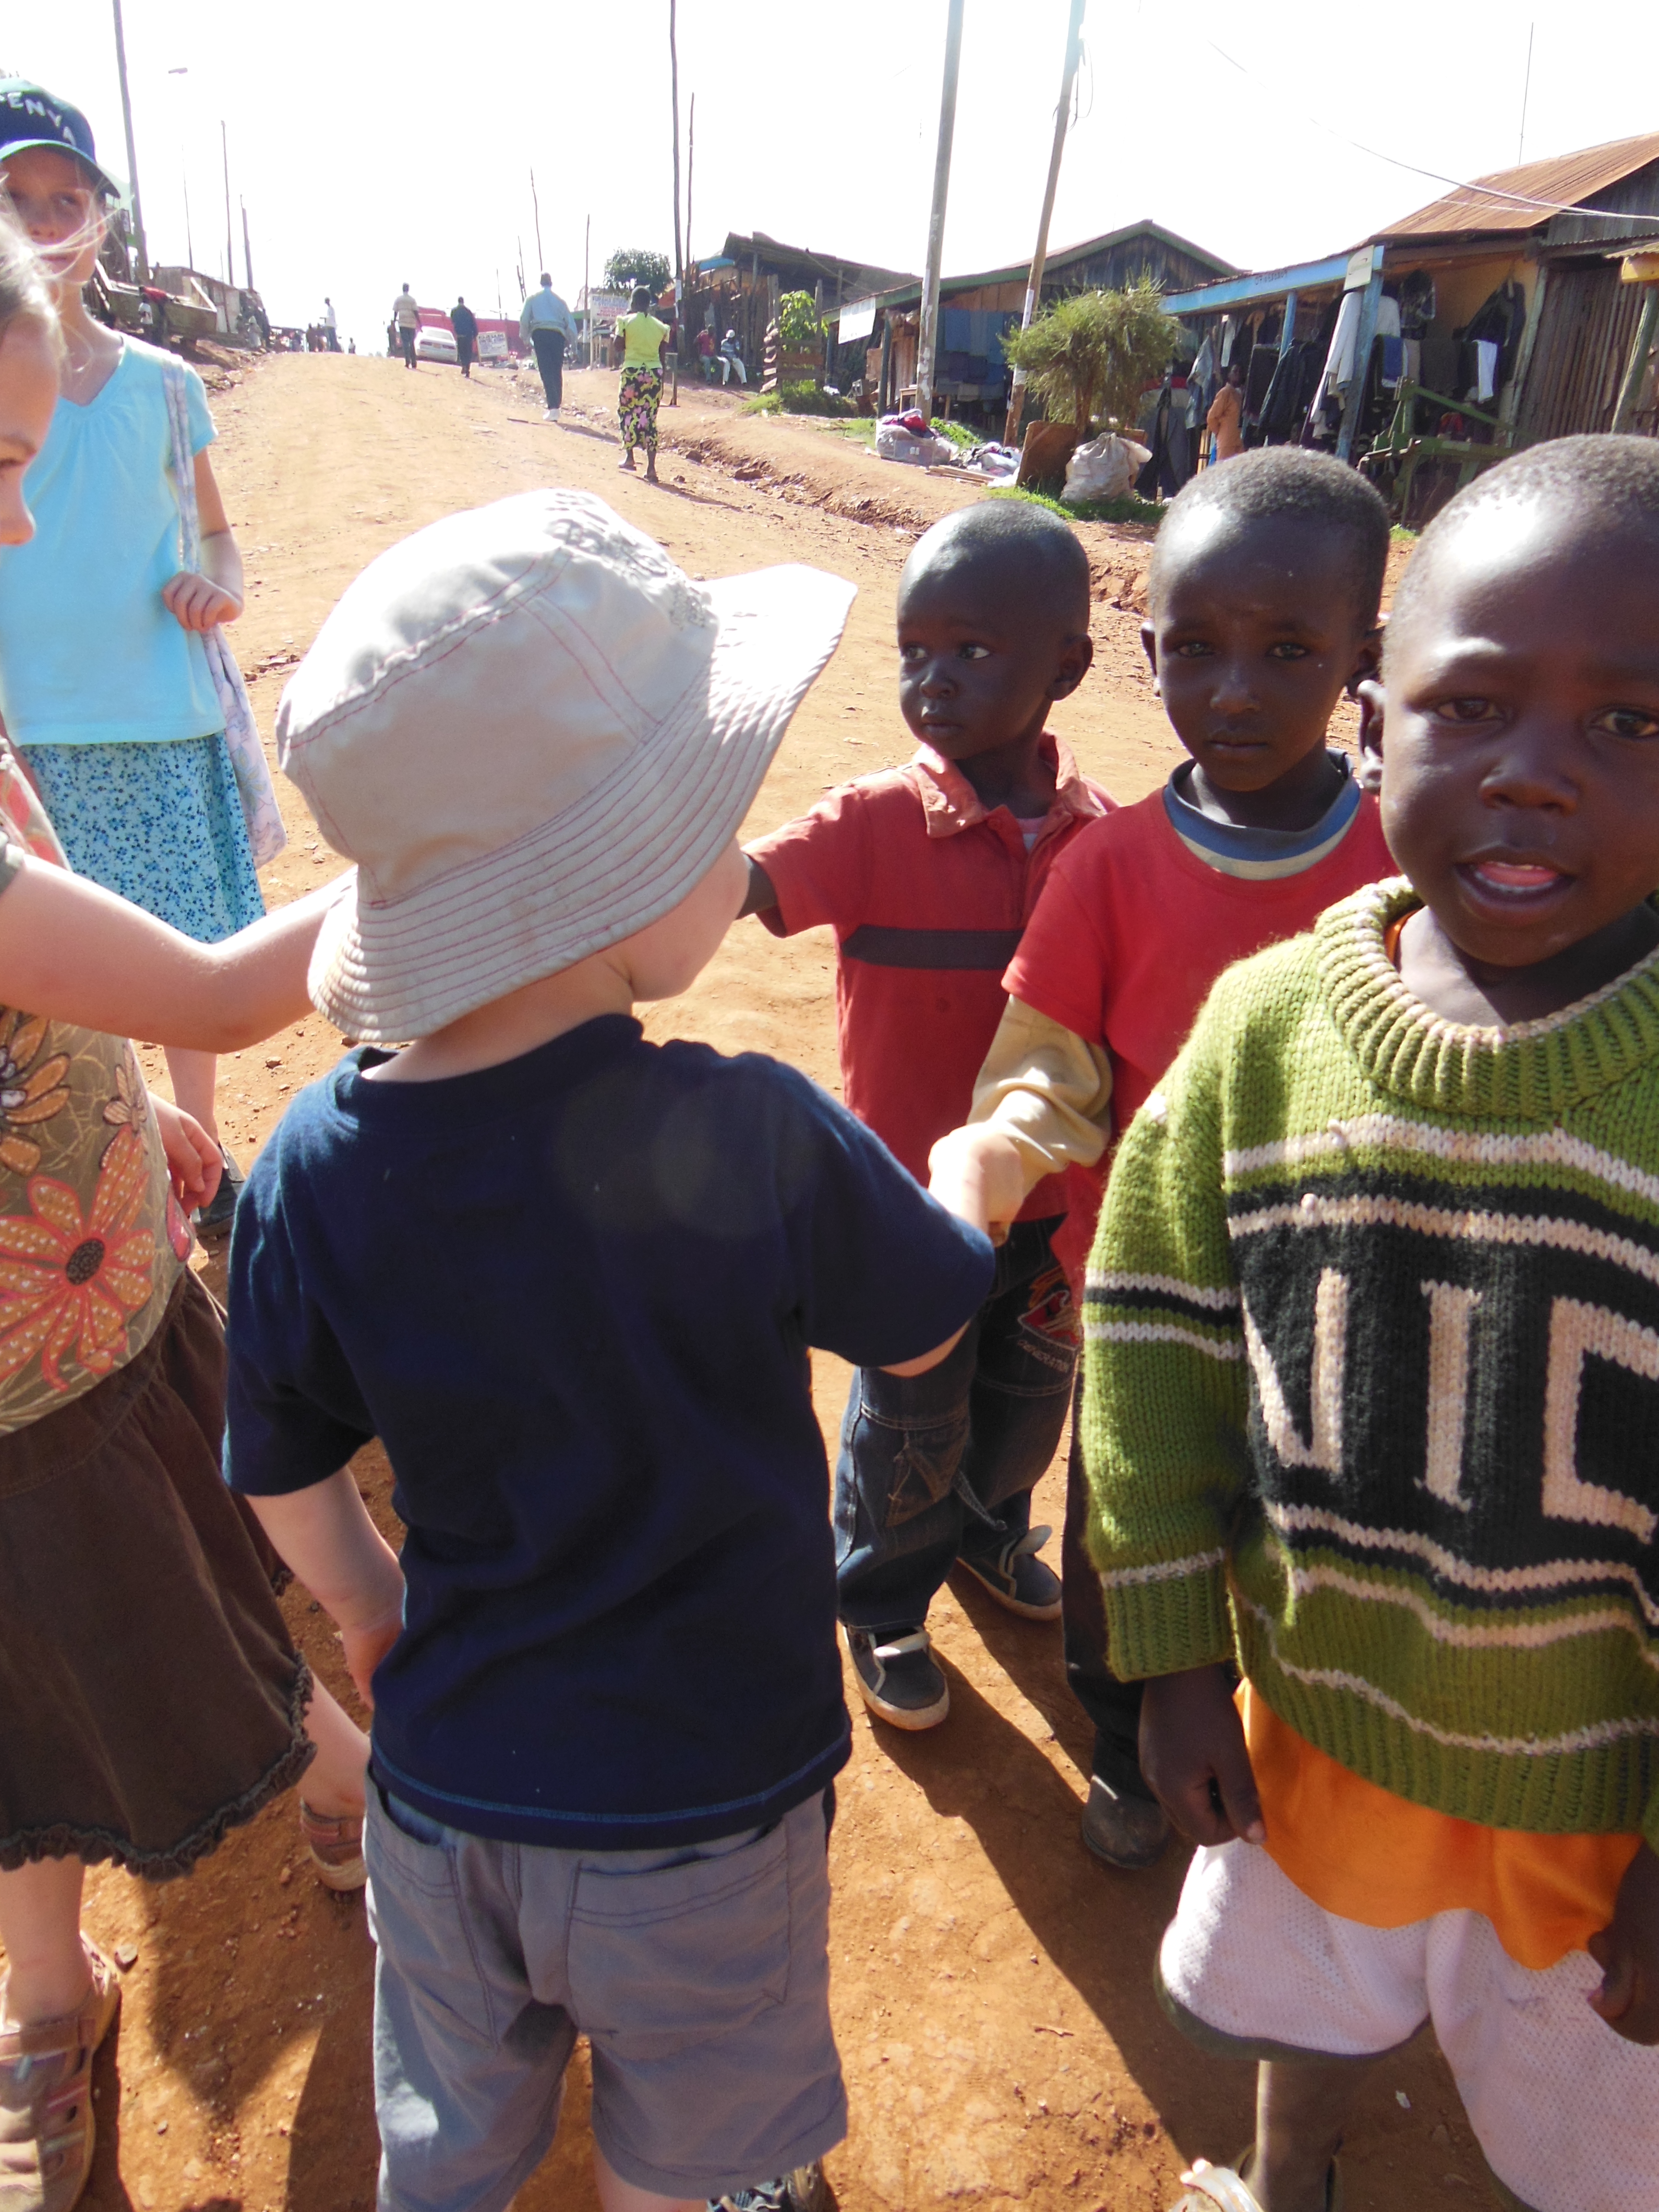 Our kids meeting Kenyan kids